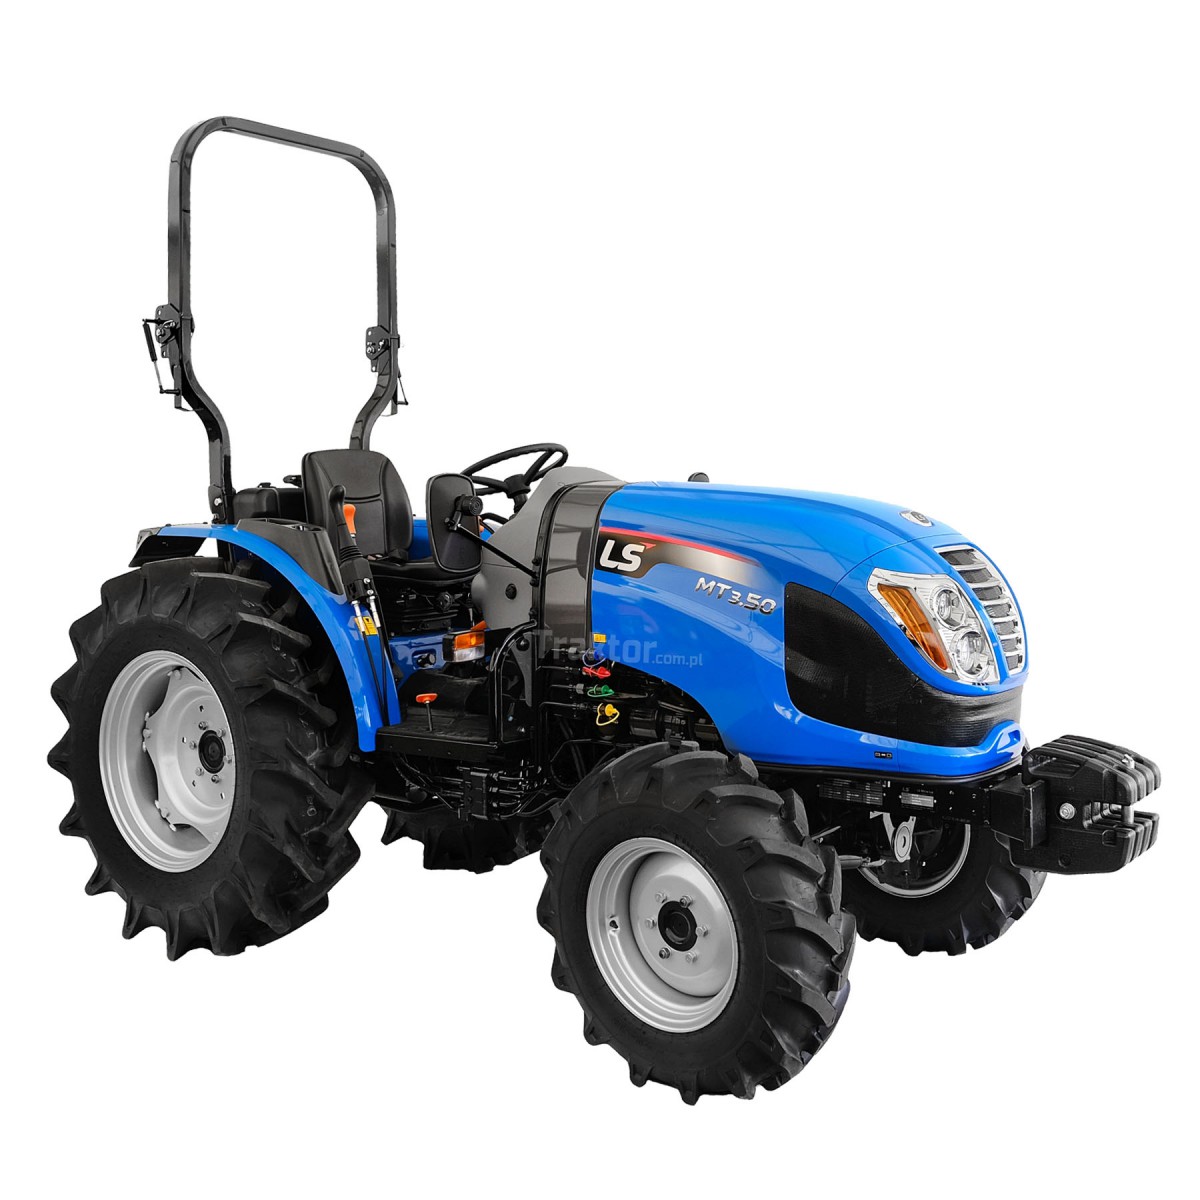 LS Traktor MT3,50 MEC 4x4 - 47 HP